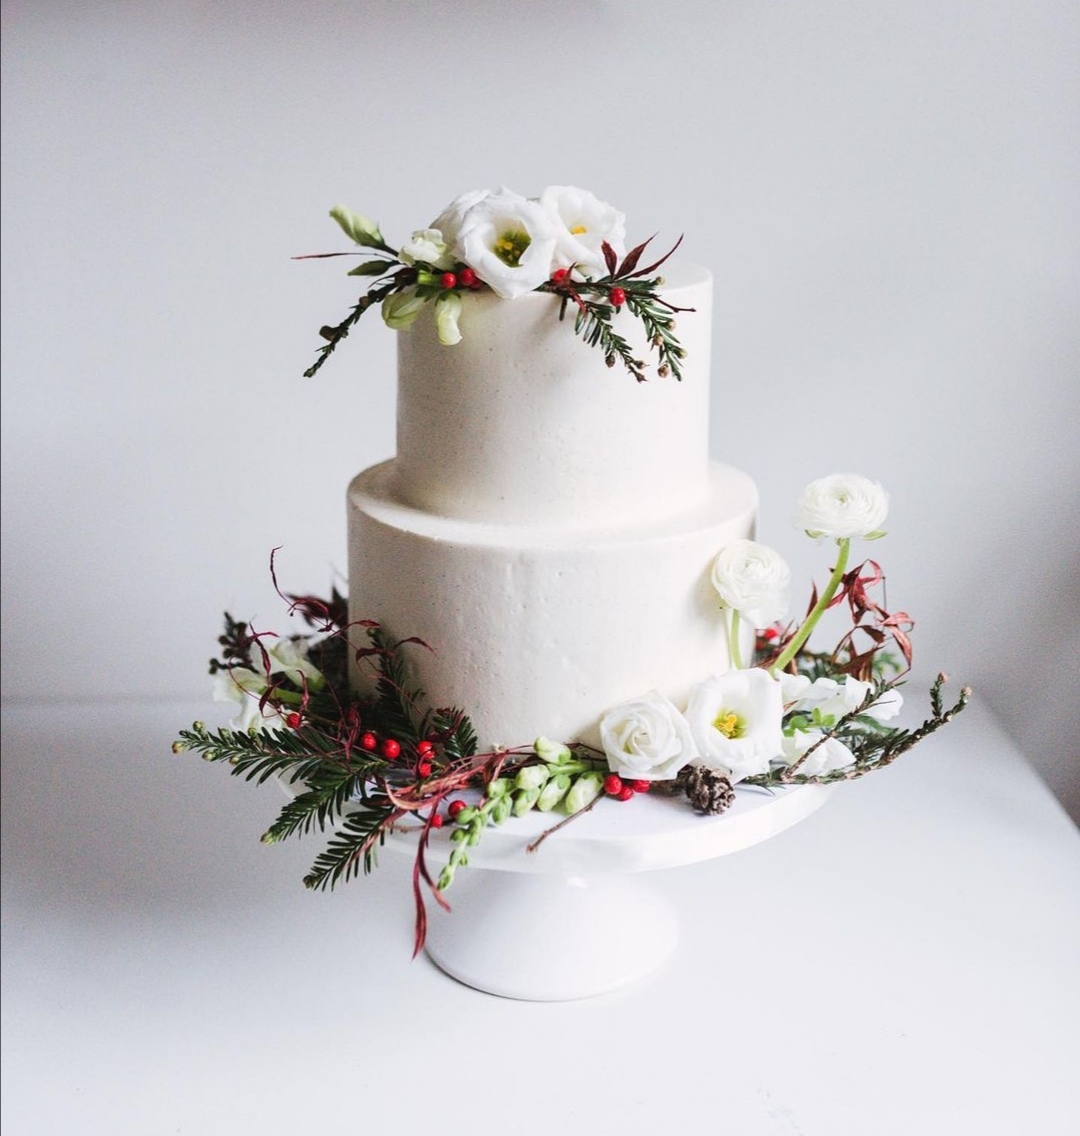 Seasonal wedding cake